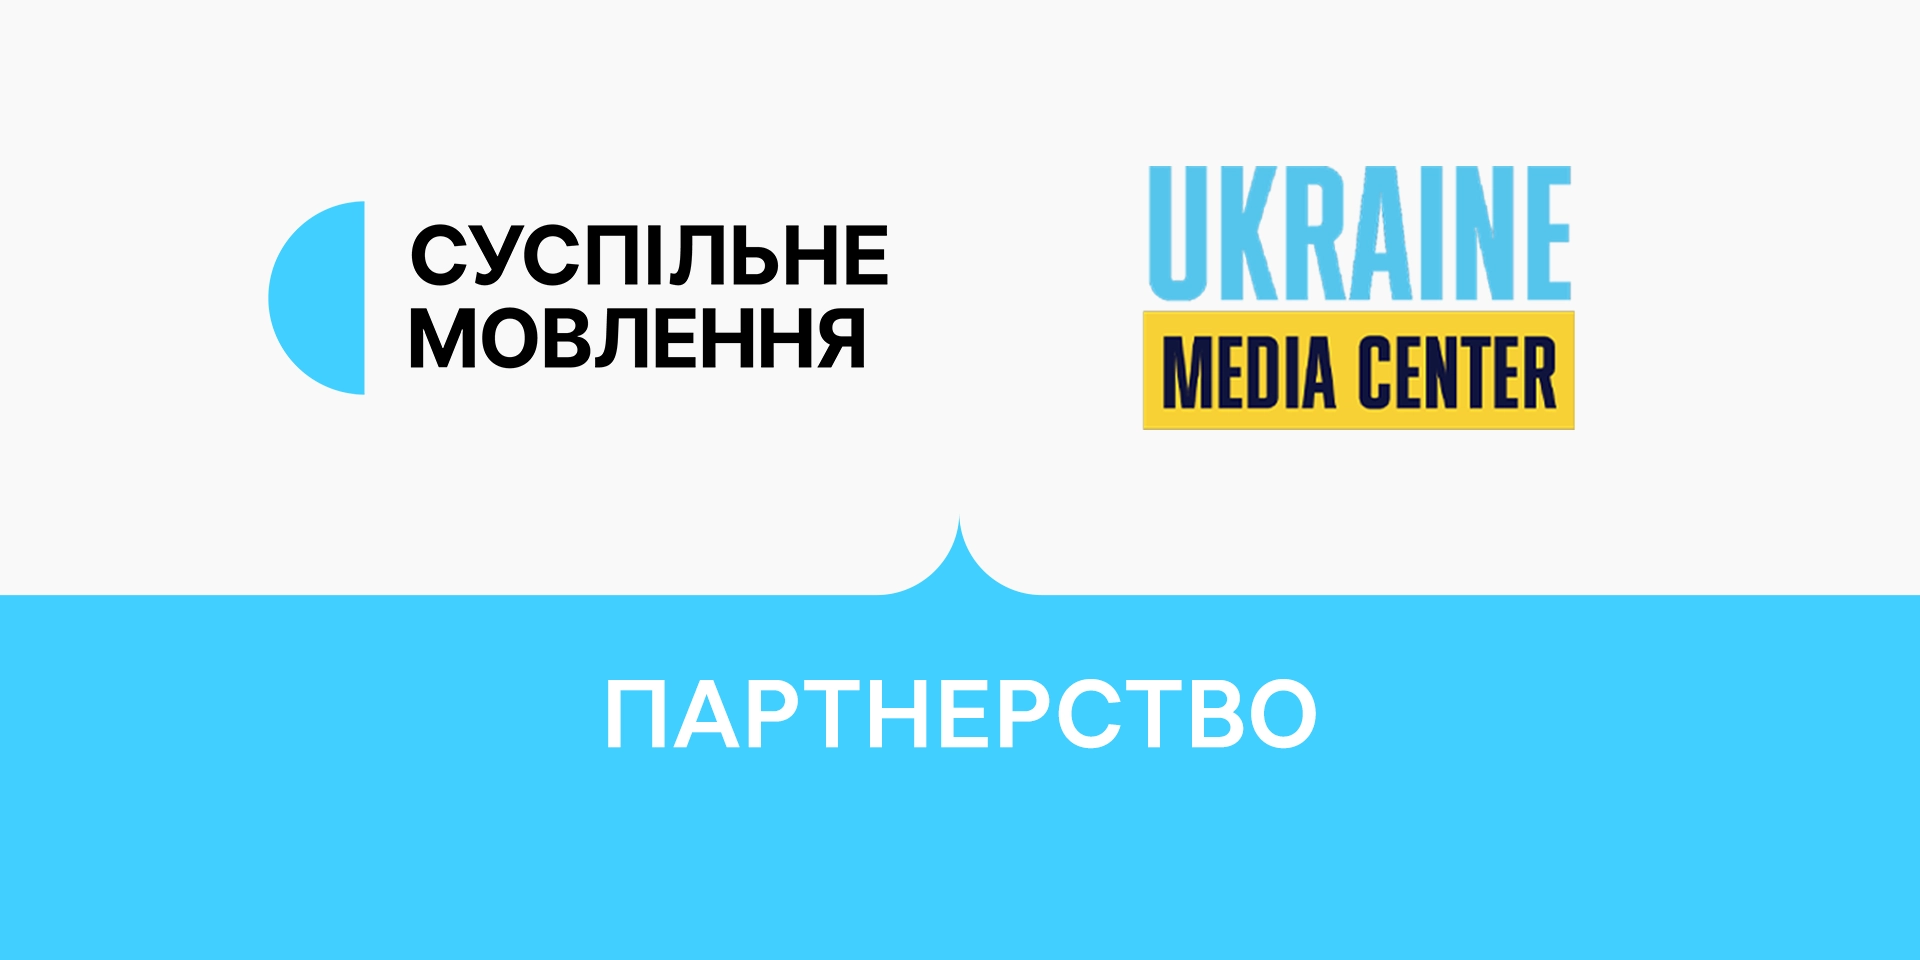 Суспільне мовлення та «Медіацентр Україна» розпочинають партнерство в рамках проєкту «Суспільний простір»